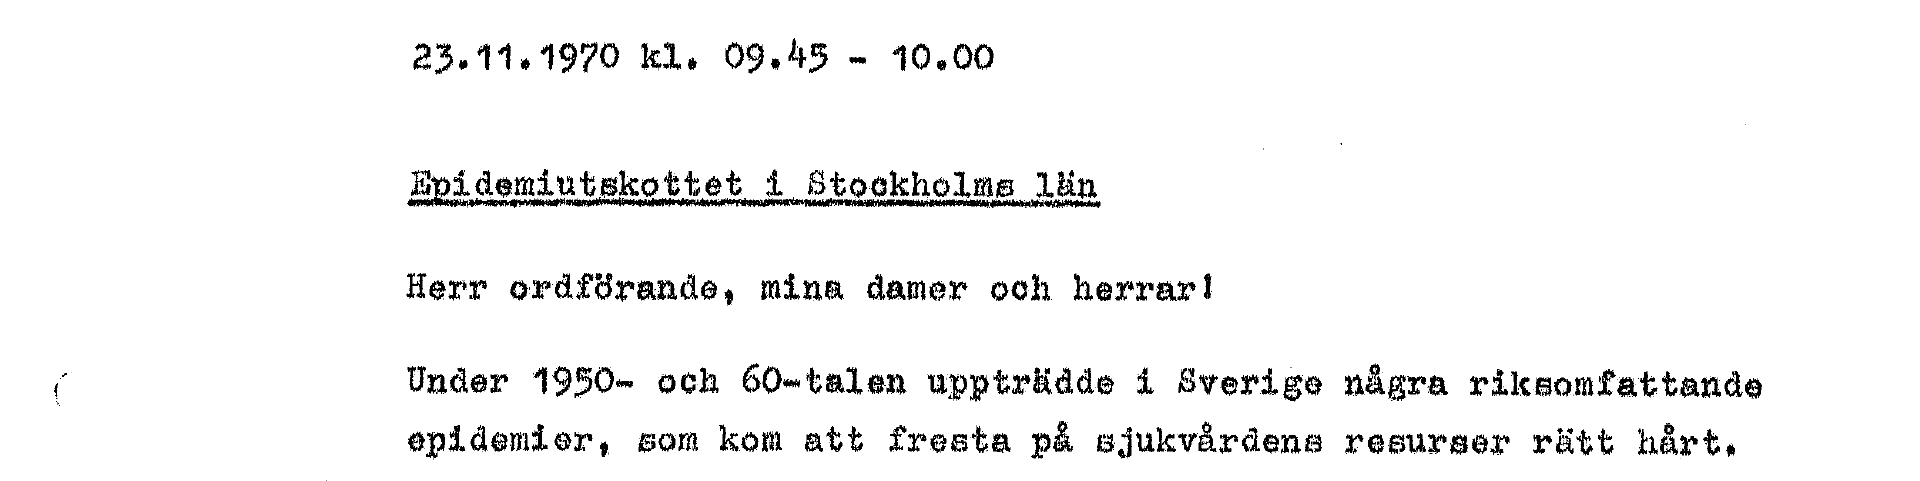 Utdrag från sammanträdesprotokoll i Epidemiutskottet i Stockholms län 25 november 1970.